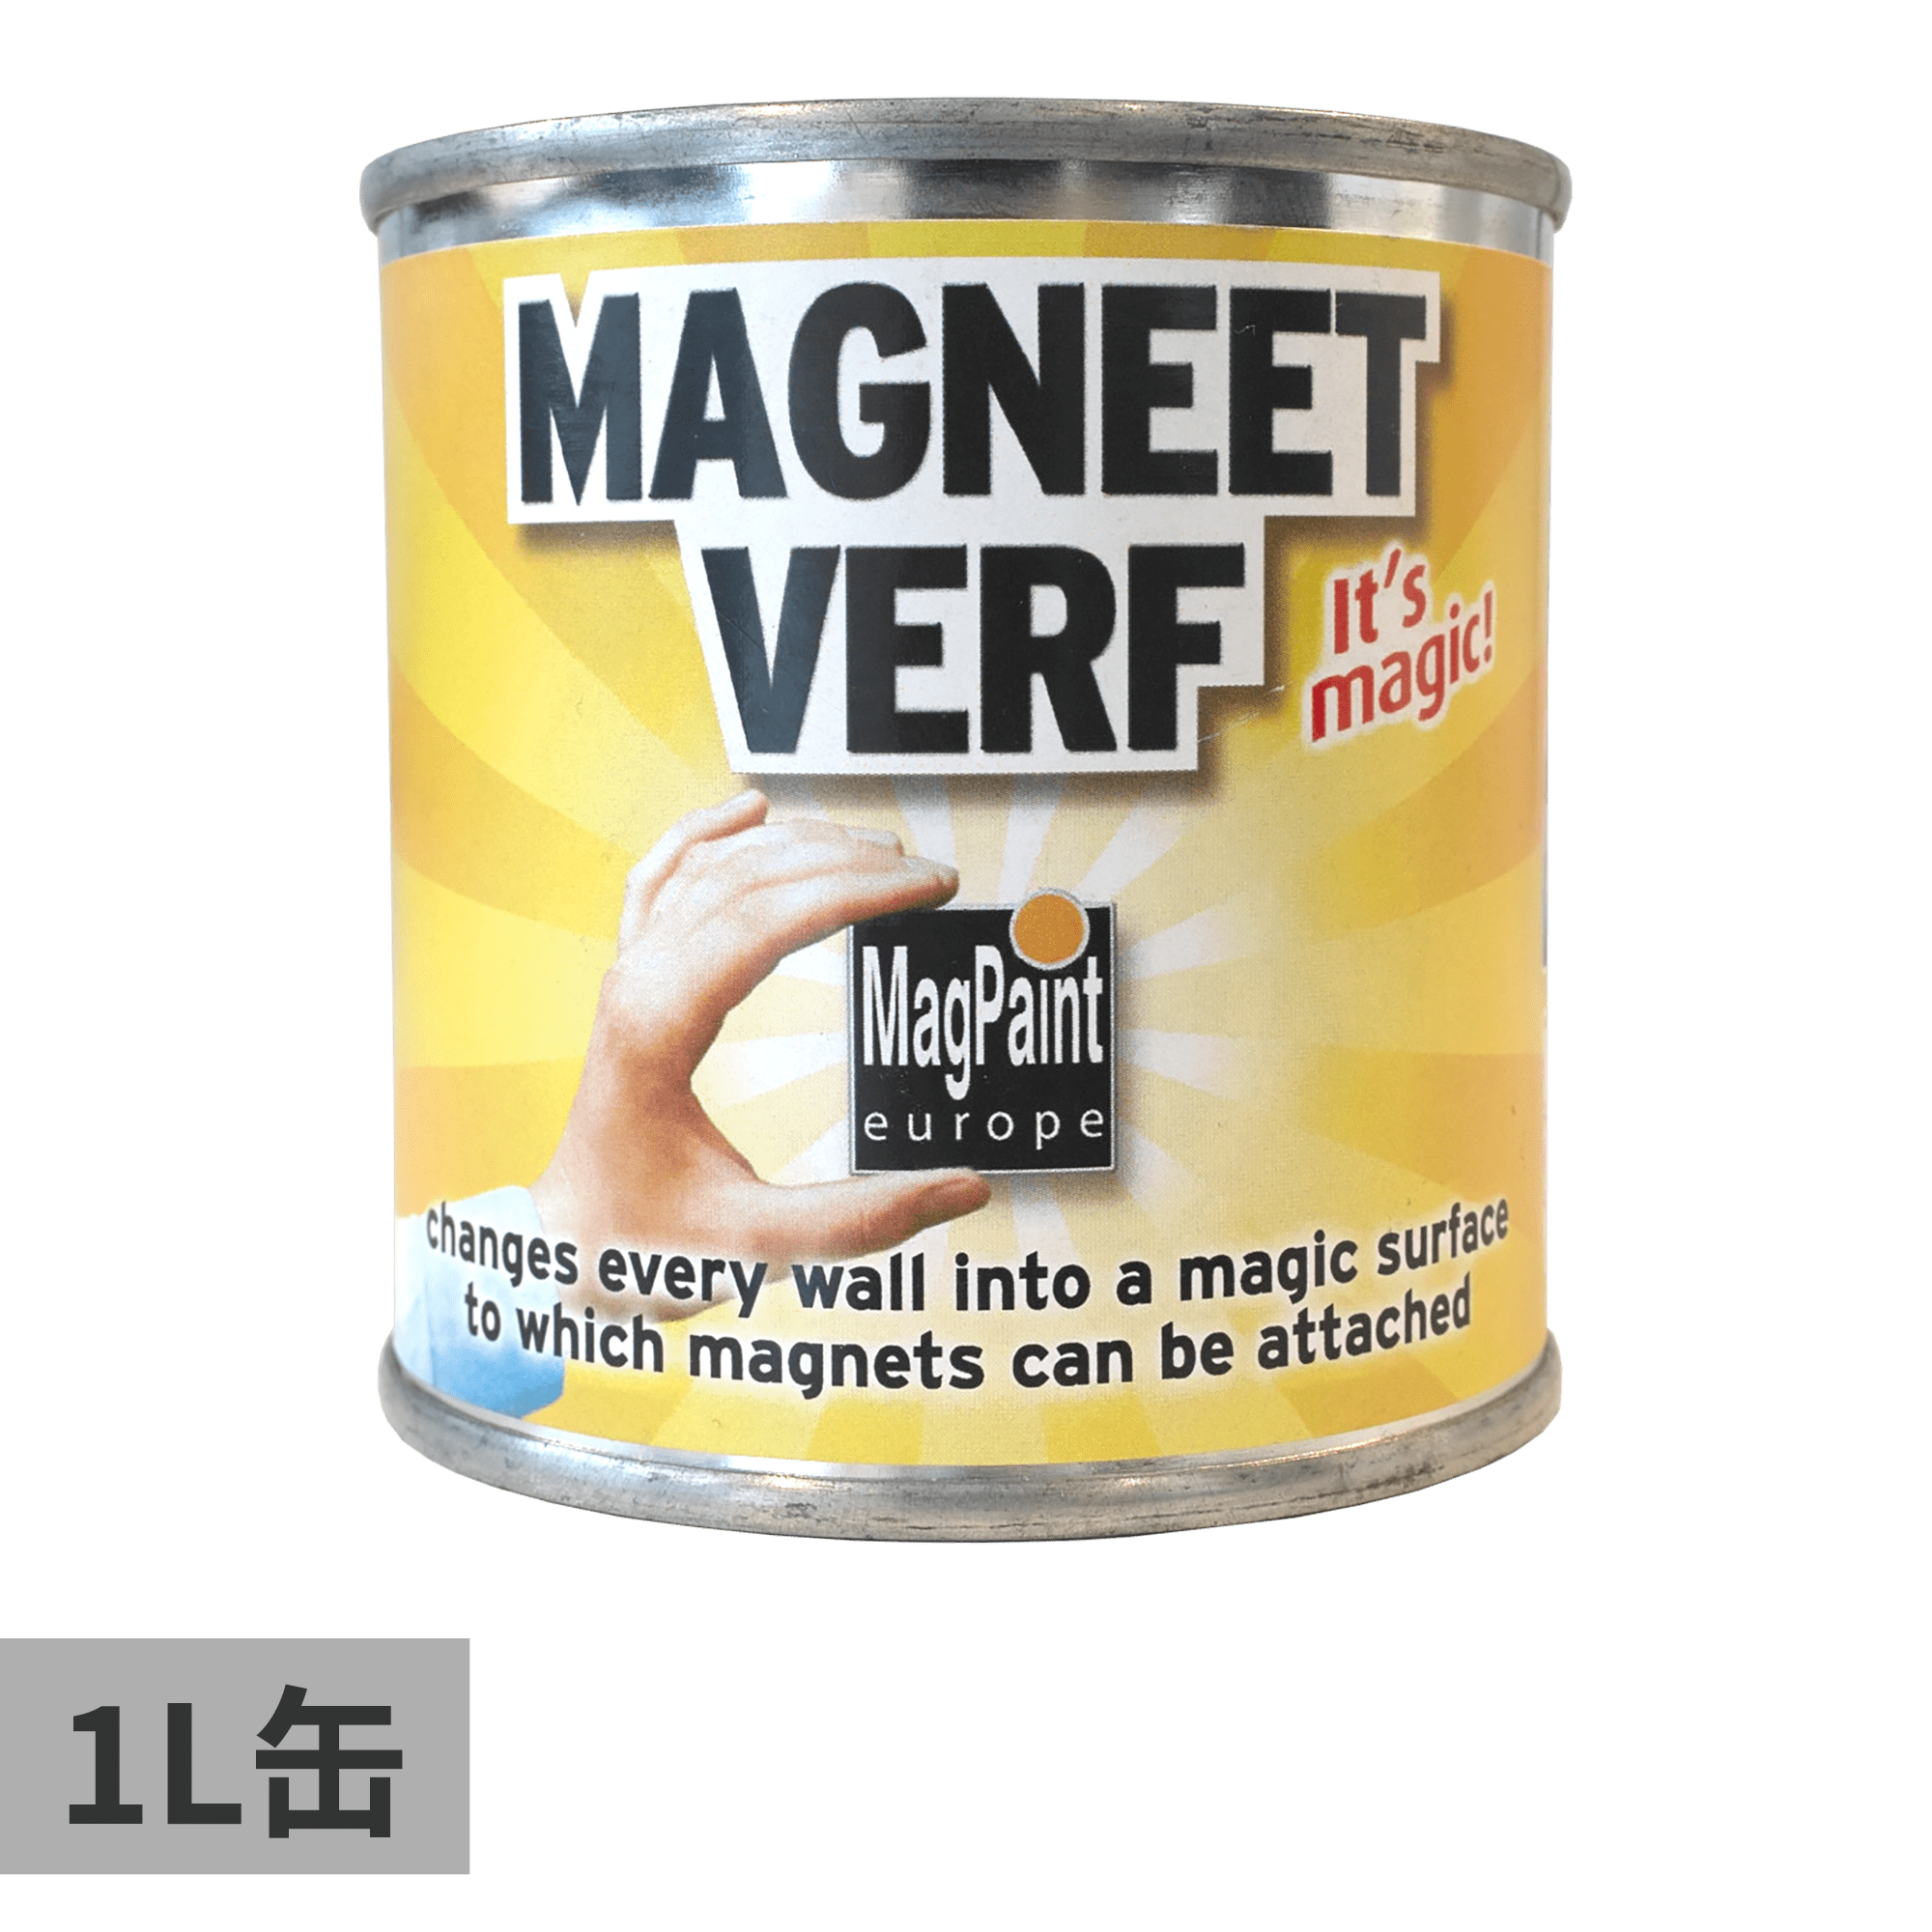 マグネット塗料 1L缶